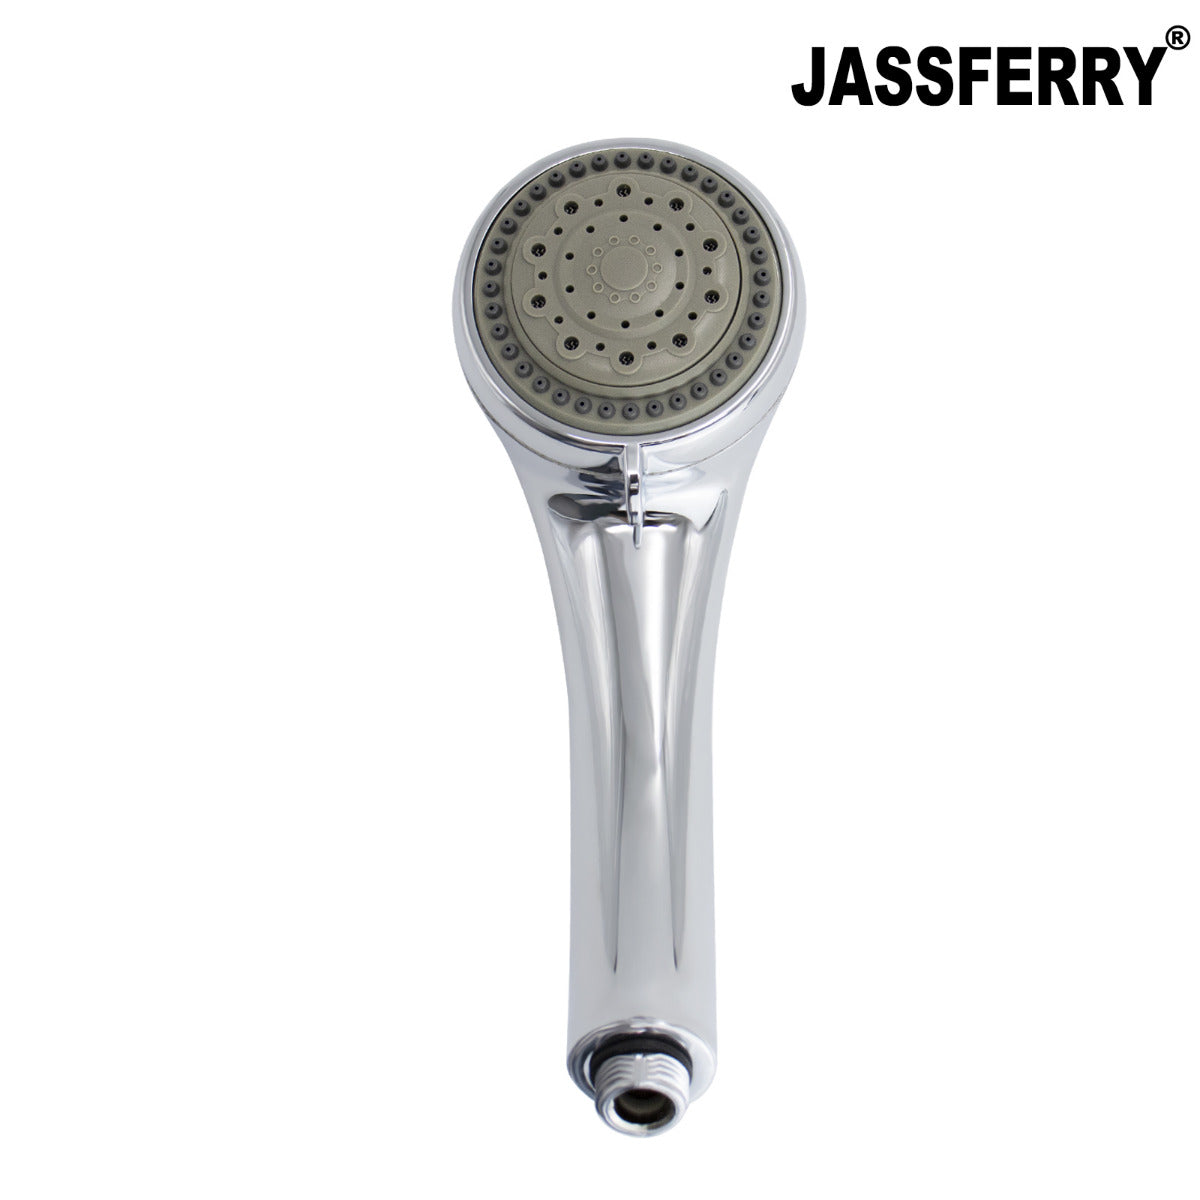 JassferryJASSFERRY New 5 Mode Bath Shower Head Set Massage Spray Hand Hodler ChromeShower Heads